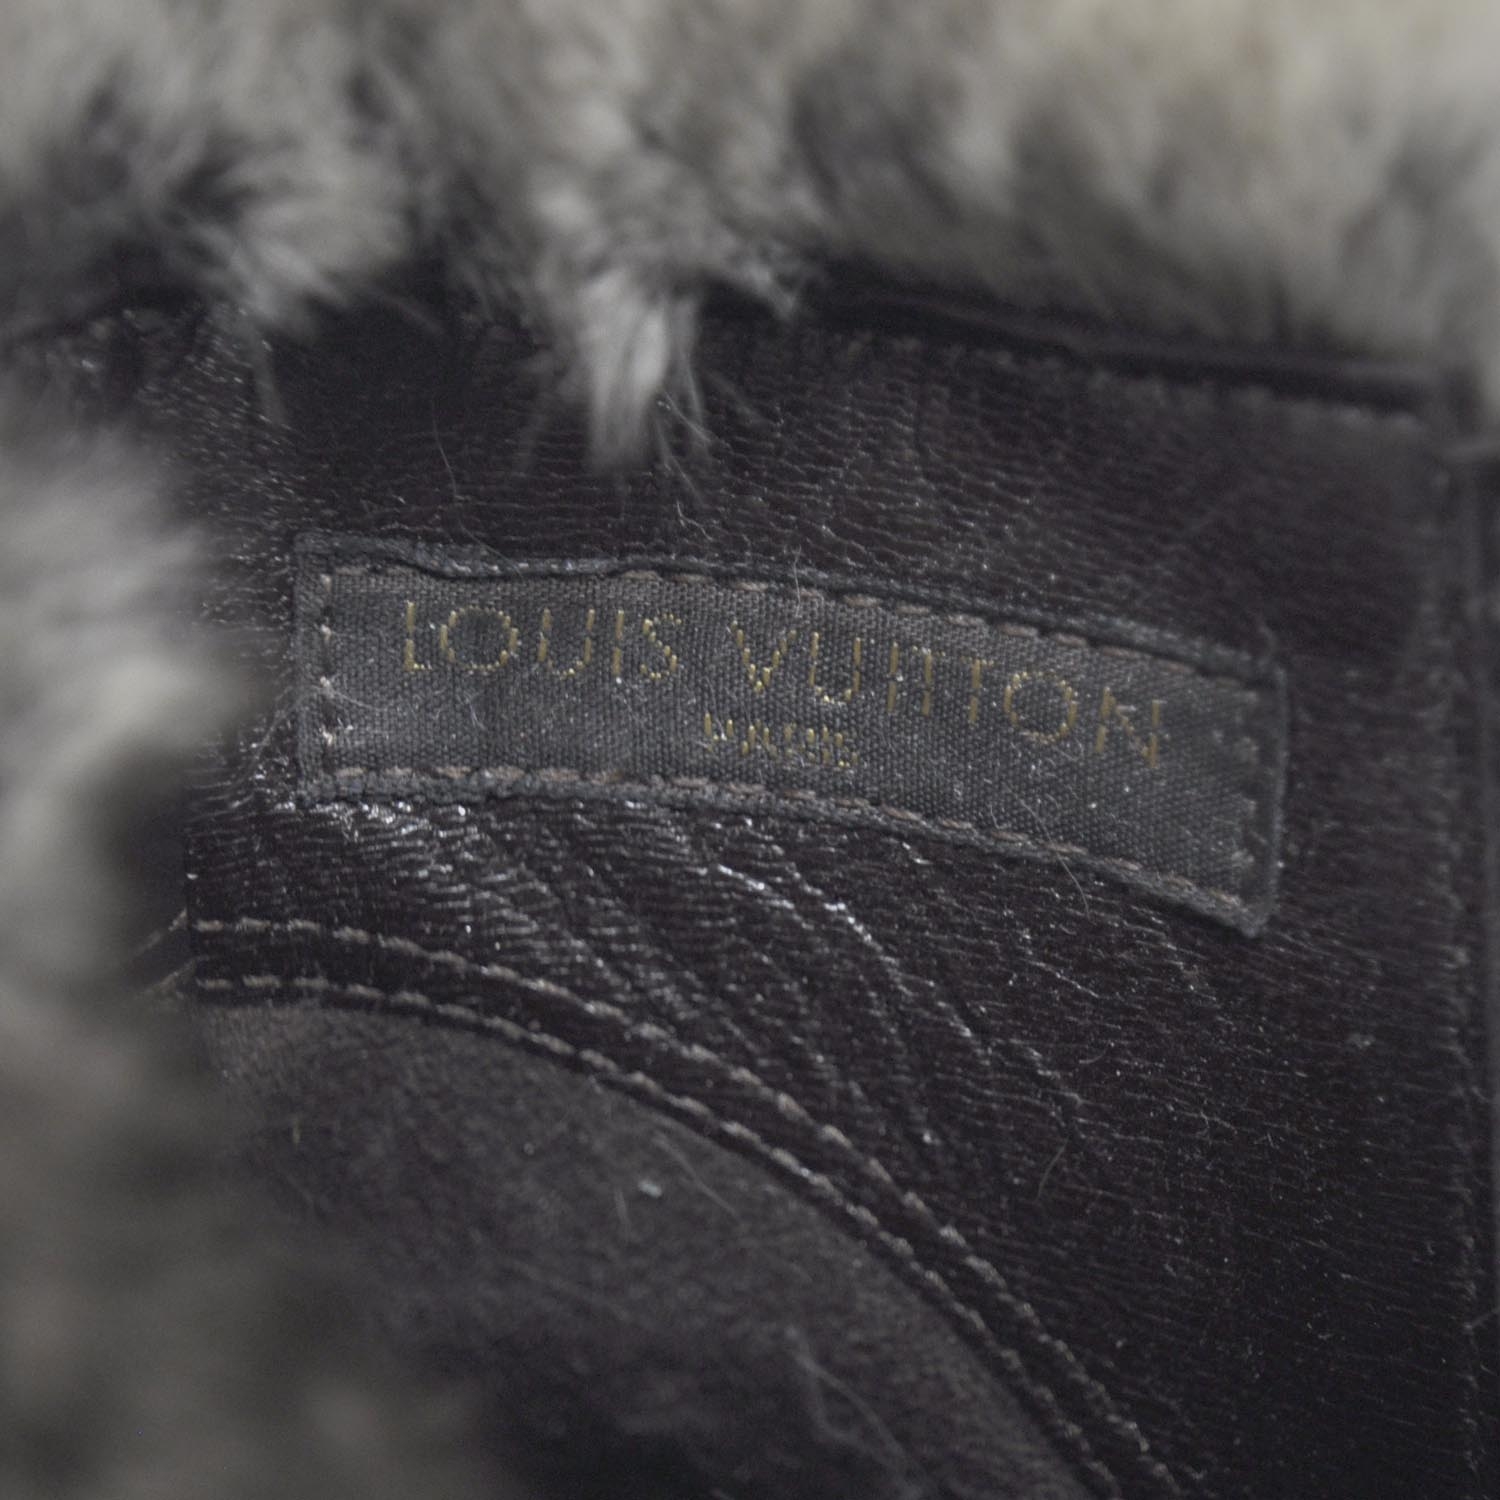 LOUIS VUITTON Suede Rabbit Fur Glacier Boots 39 23155